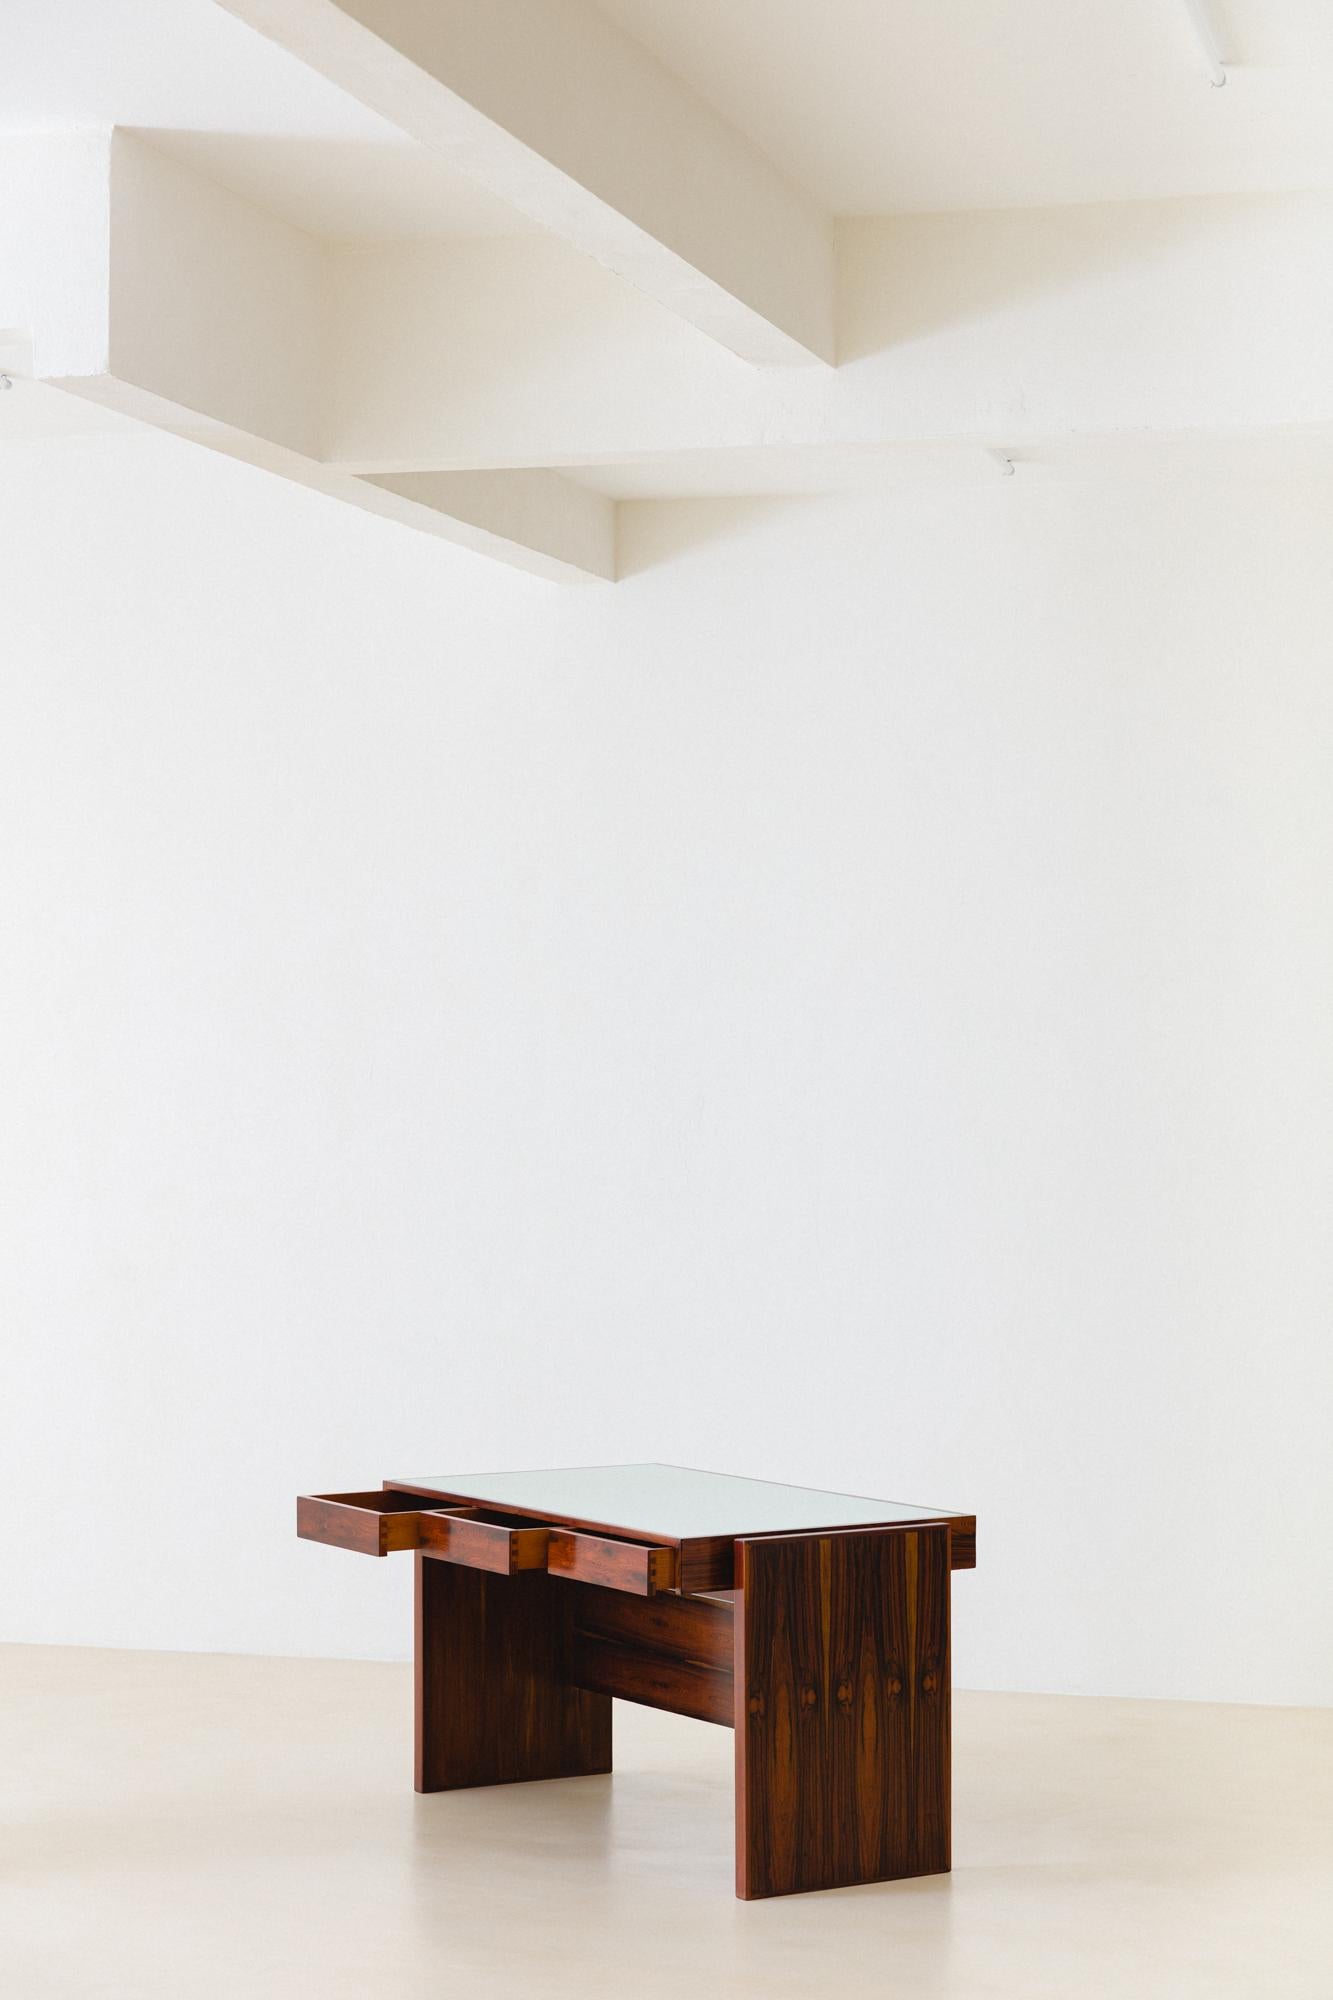 Ce bureau en bois de rose d'une qualité exceptionnelle, conçu par Joaquim Tenreiro (1906-1992), appartenait à BLOCH EDITORES S.A. BUILDING, une maison d'édition brésilienne fondée en 1952 et fermée en 2000, où Tenreiro a aménagé l'intérieur. Il